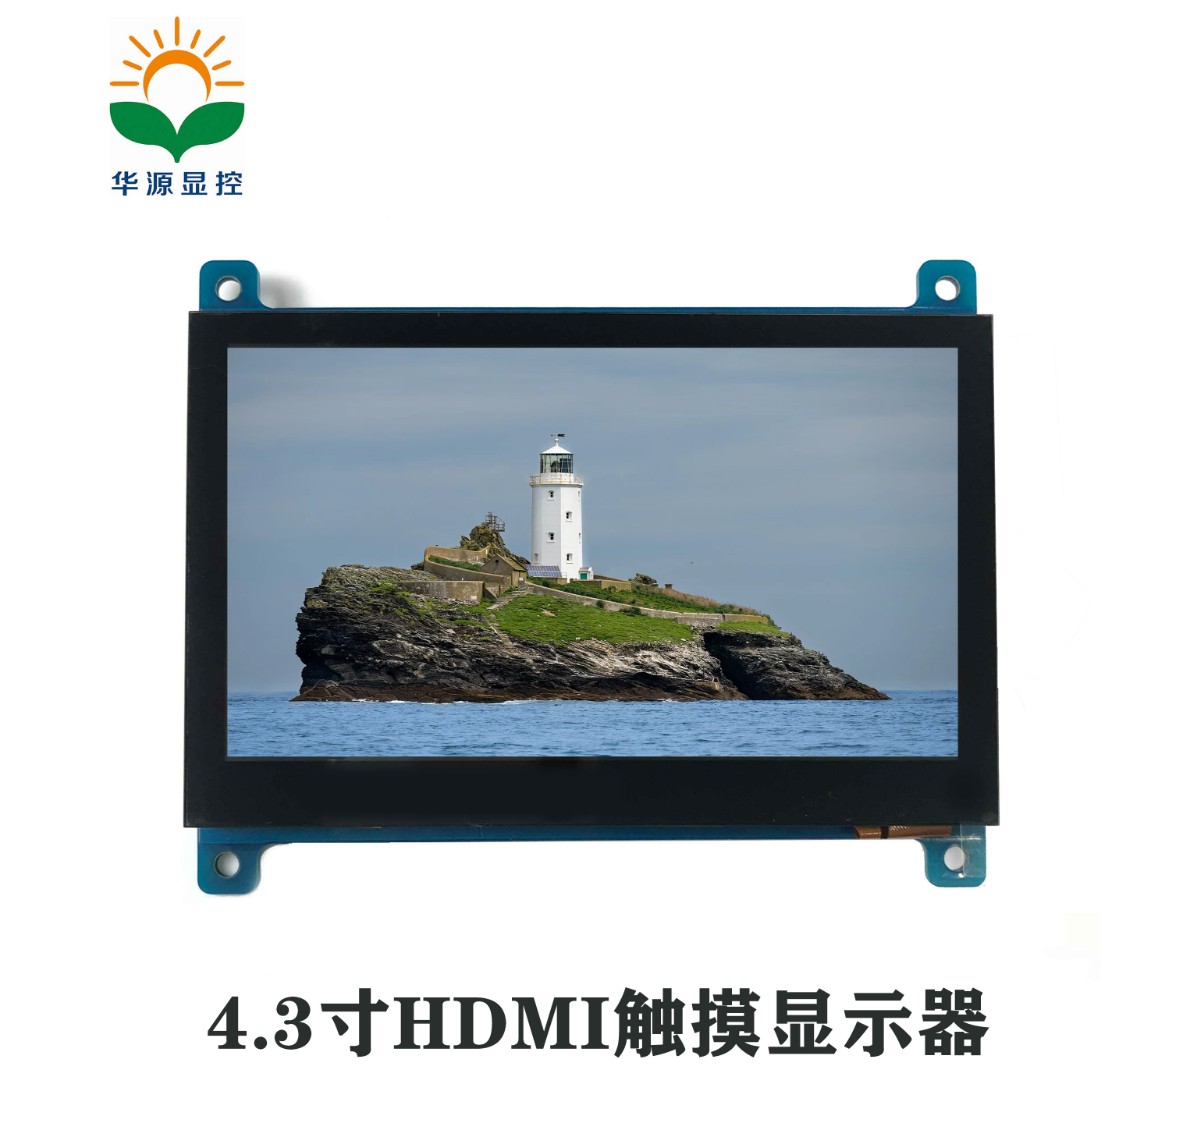 4.3寸 #HDMI 触摸显示屏